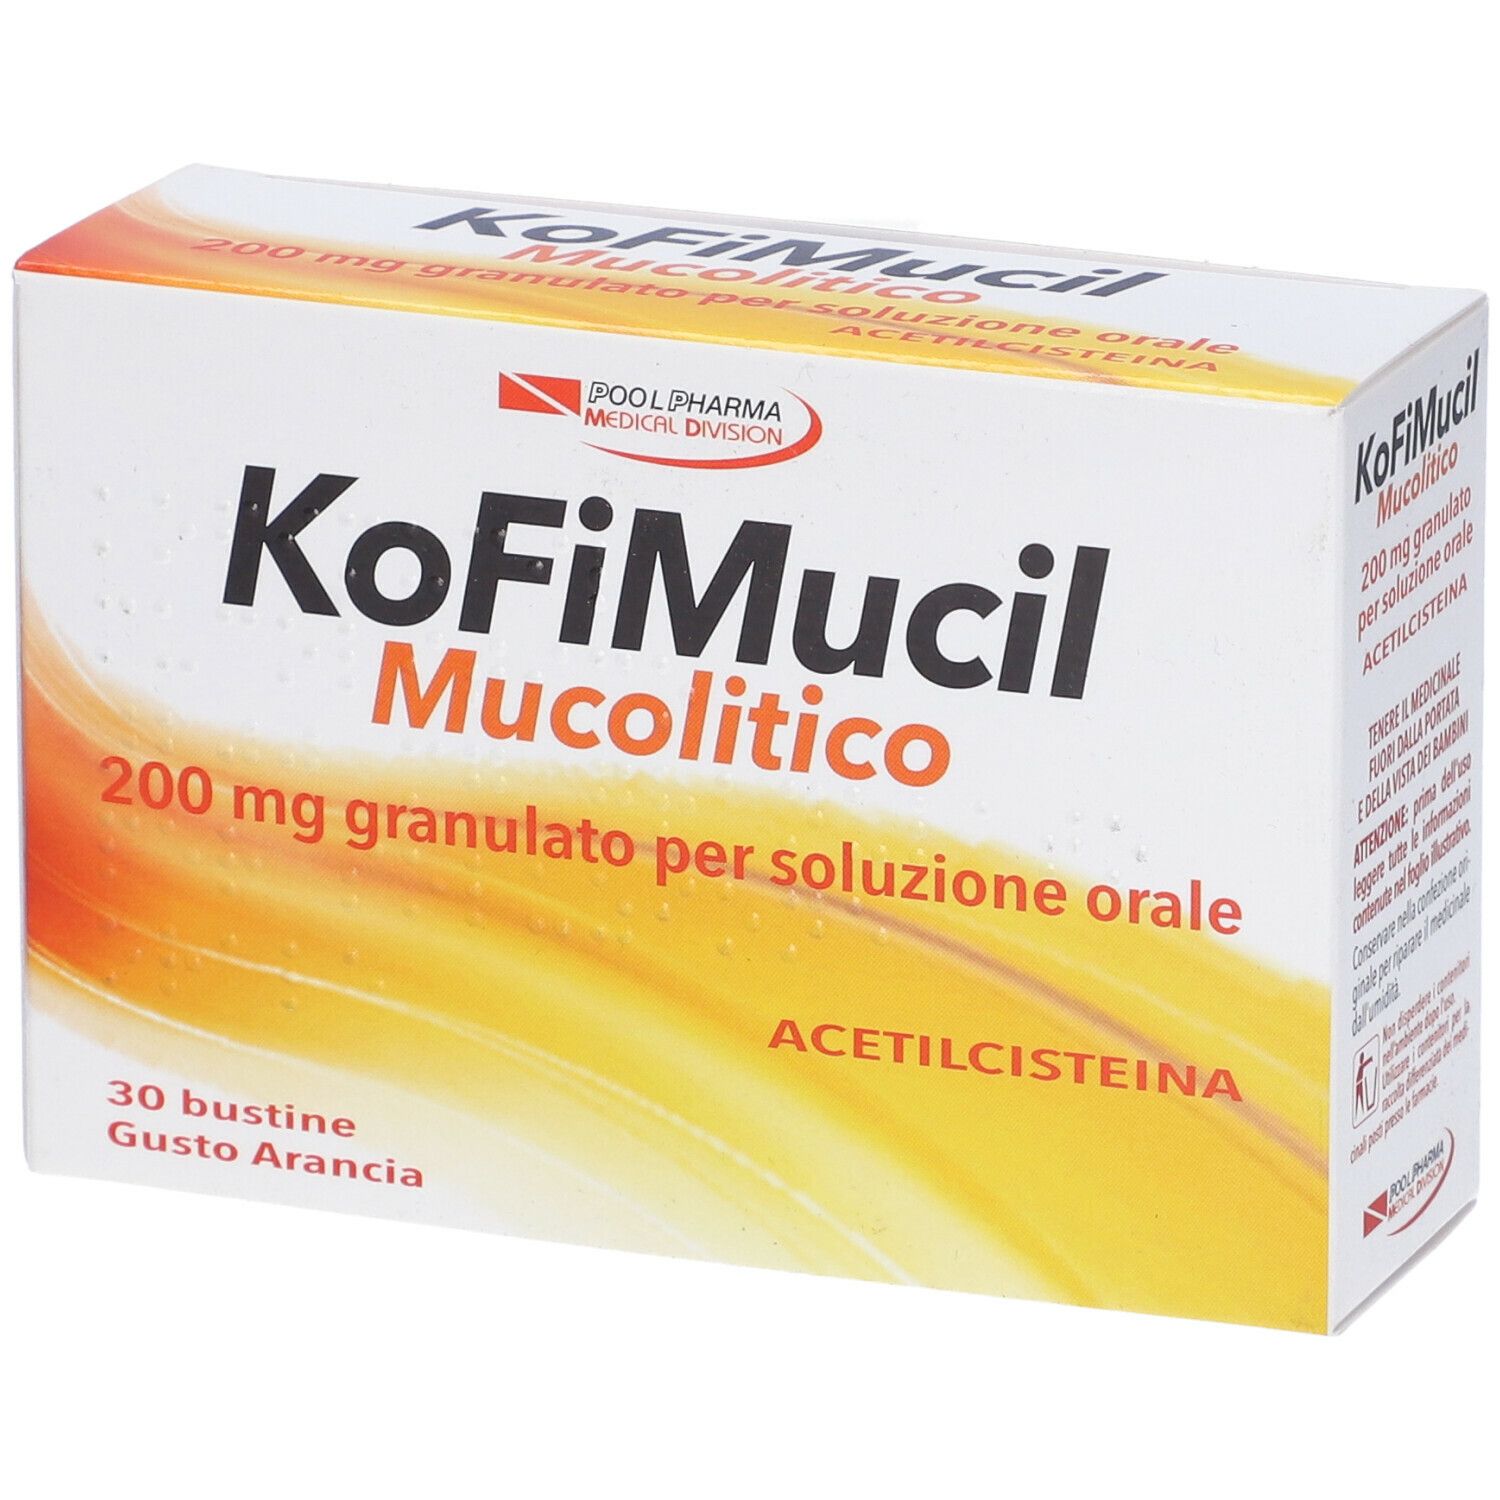 Pool Pharma KoFiMucil Mucolitico 200 mg Gusto Arancia